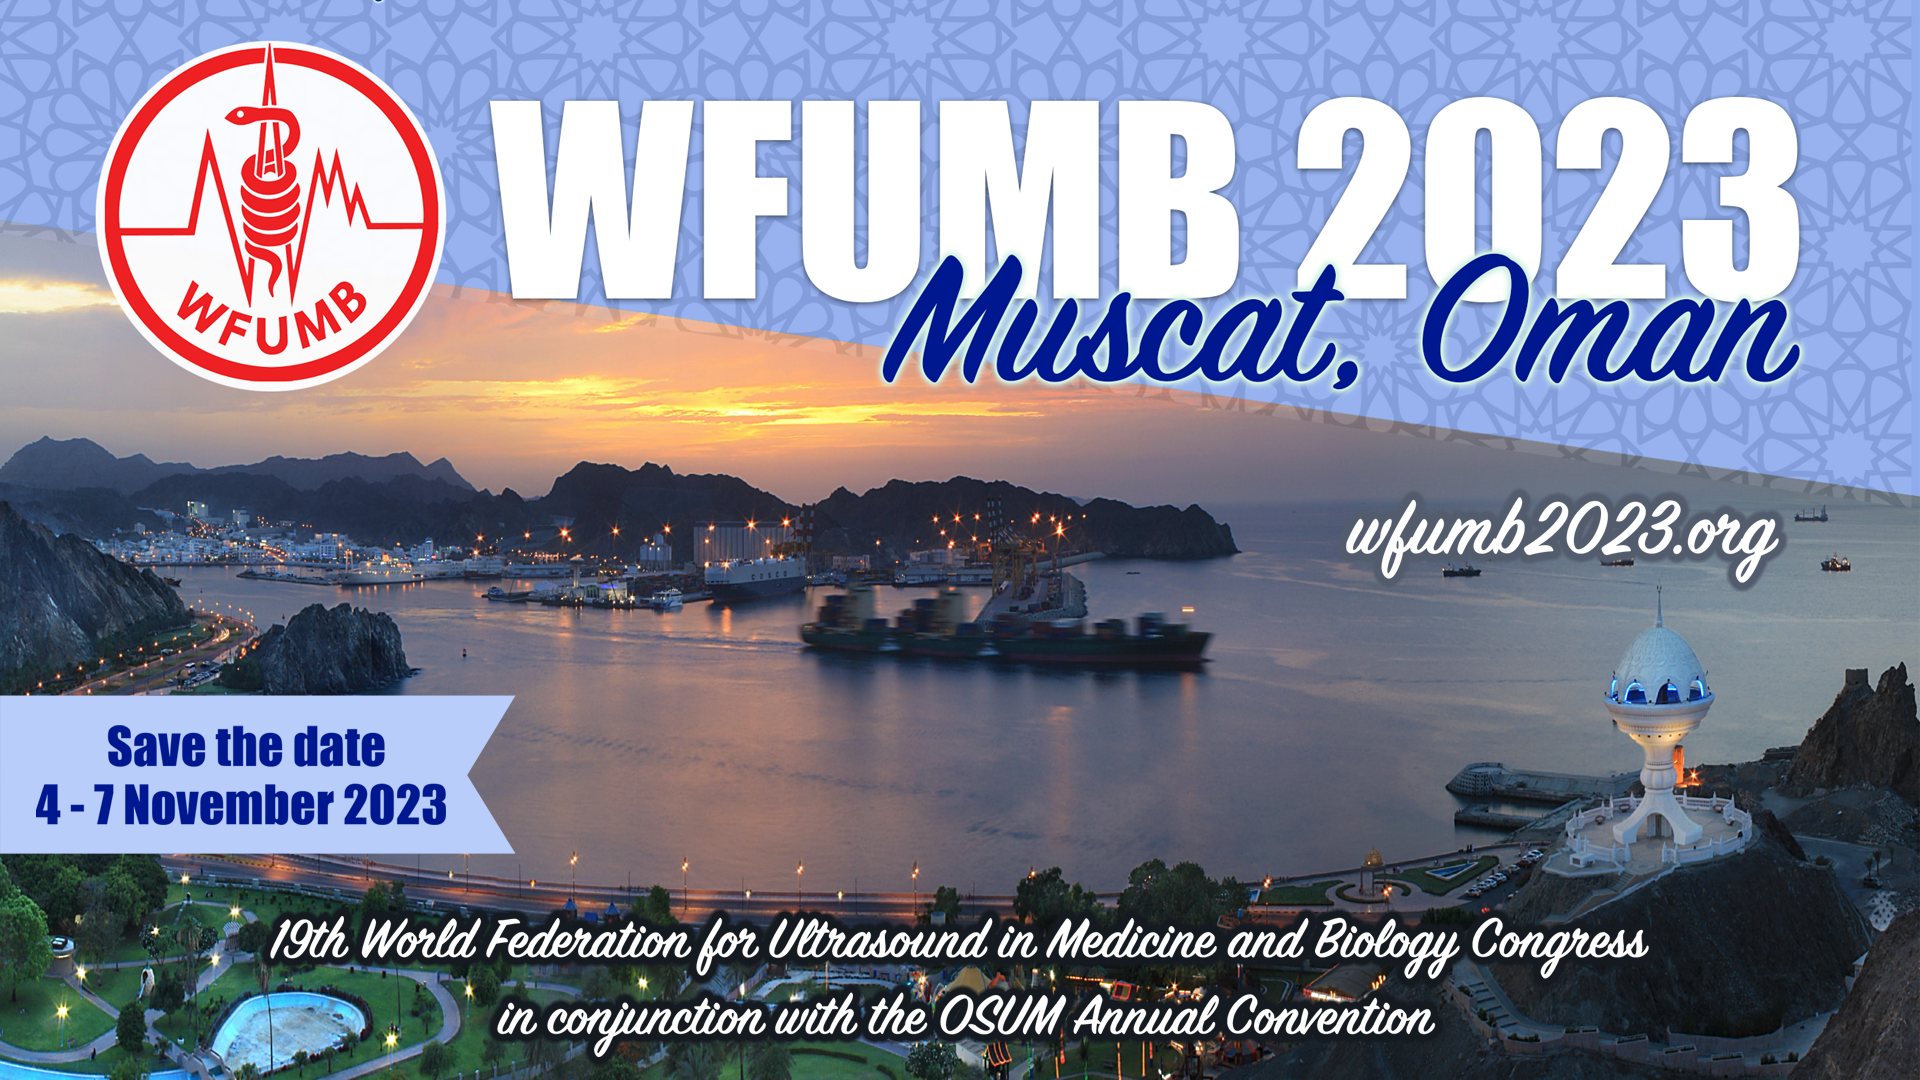 WFUMB 2023 in Muscat